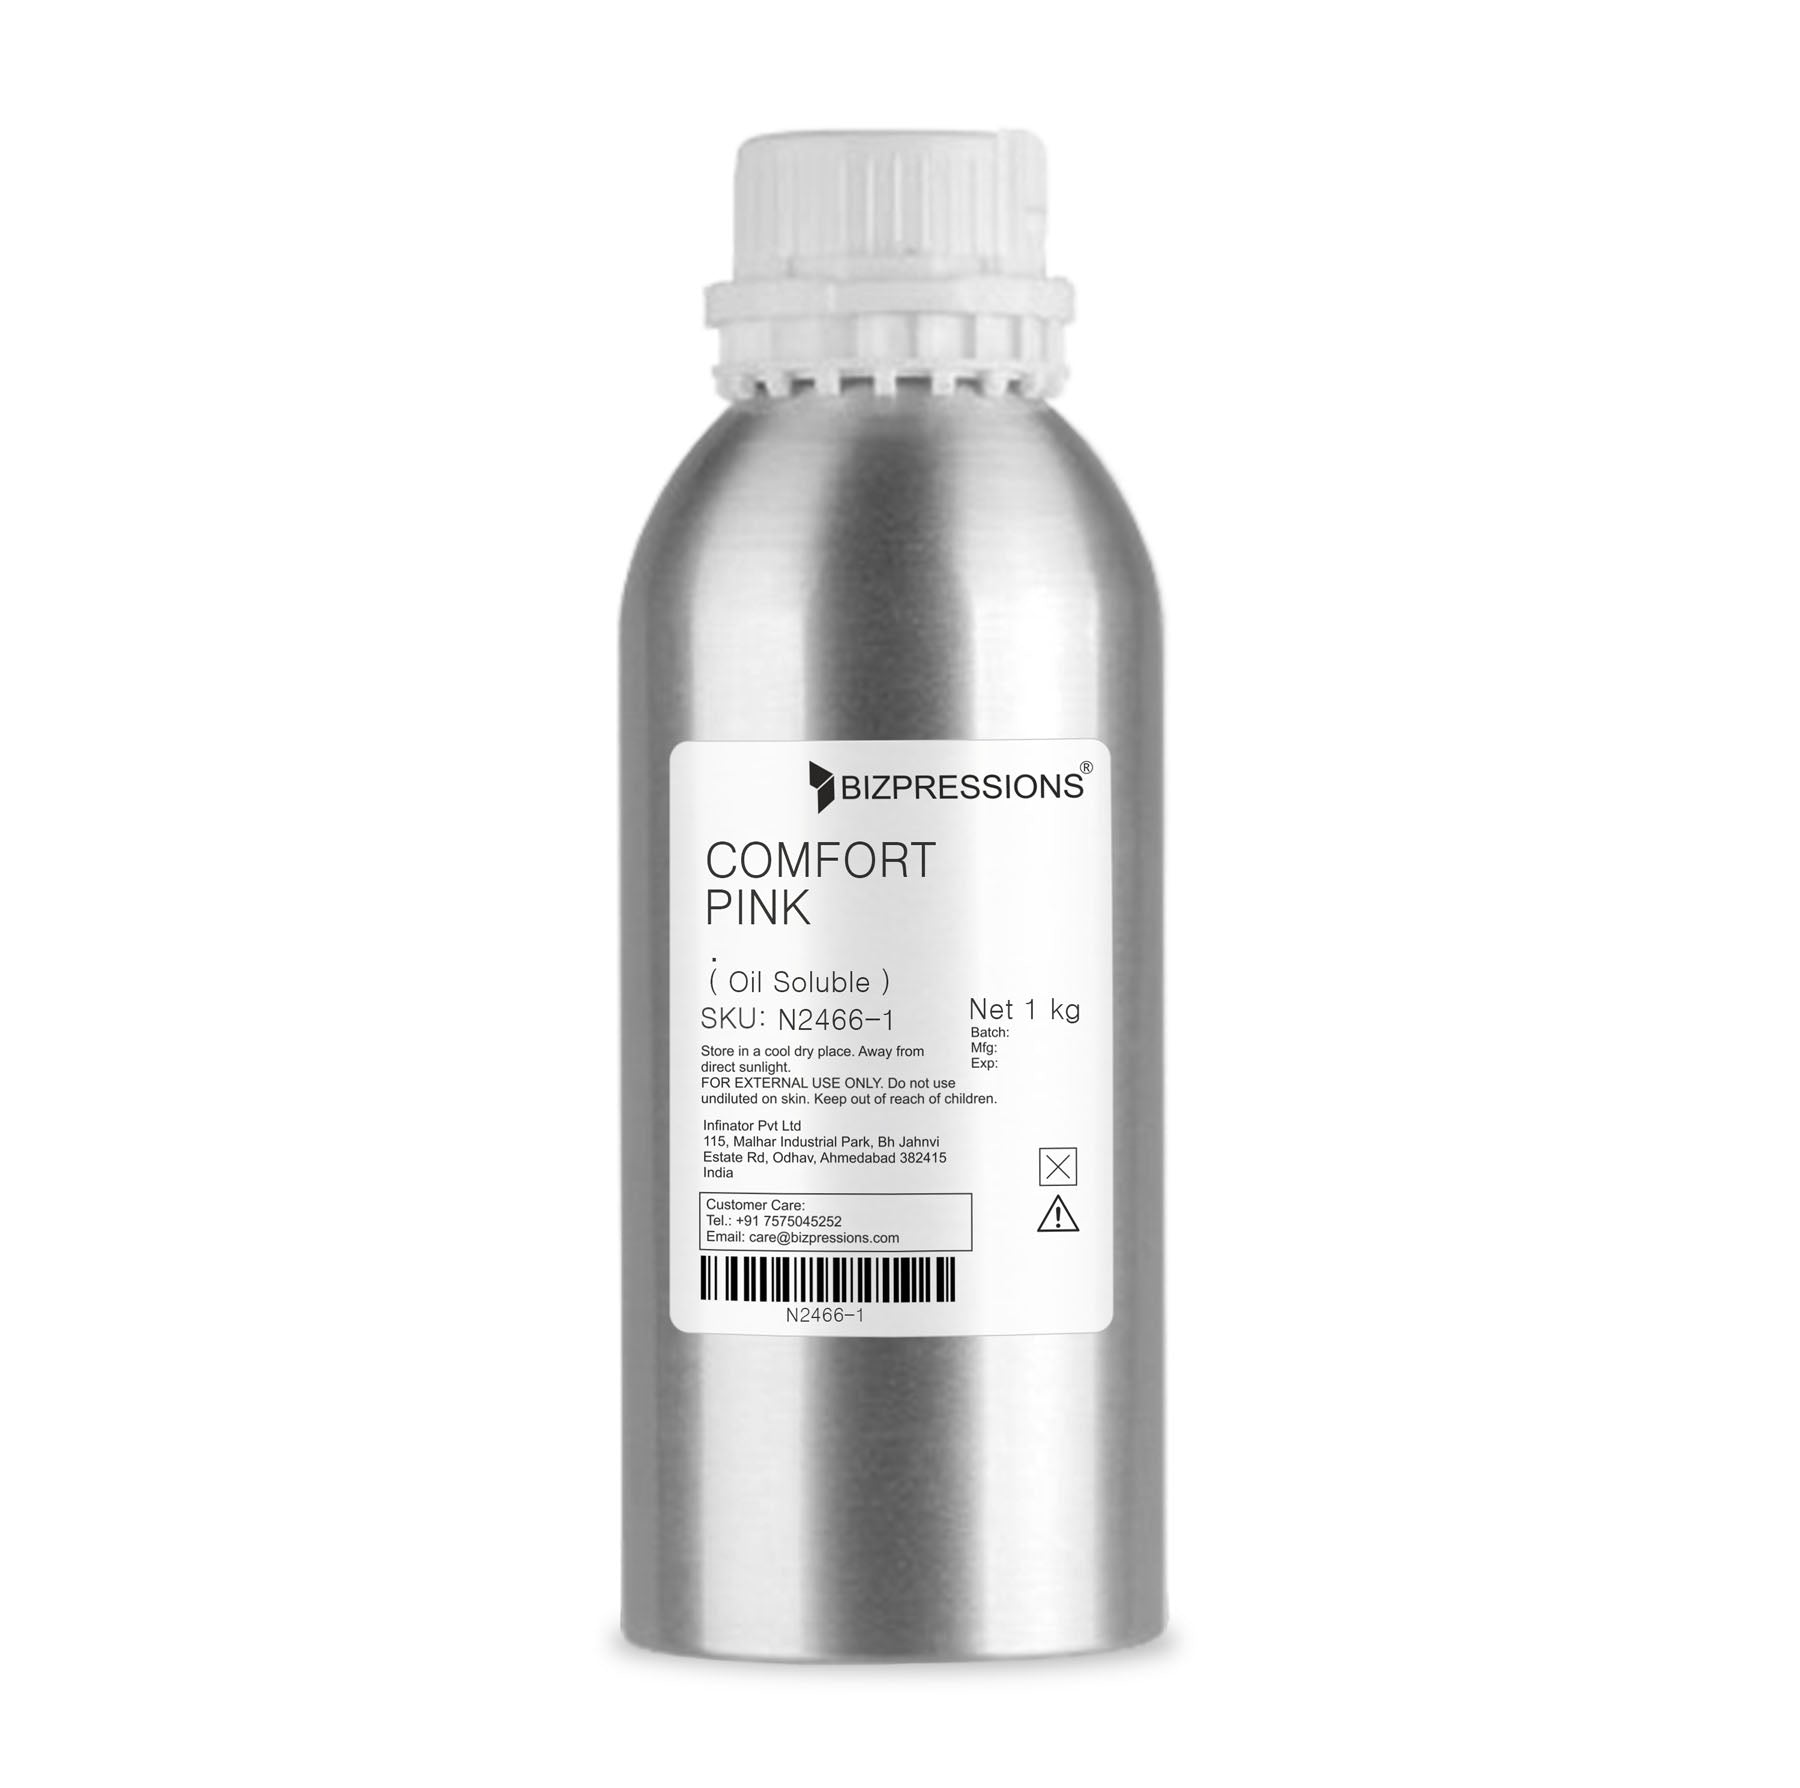 COMFORT PINK - Fragrance ( Oil Soluble ) - 1 kg